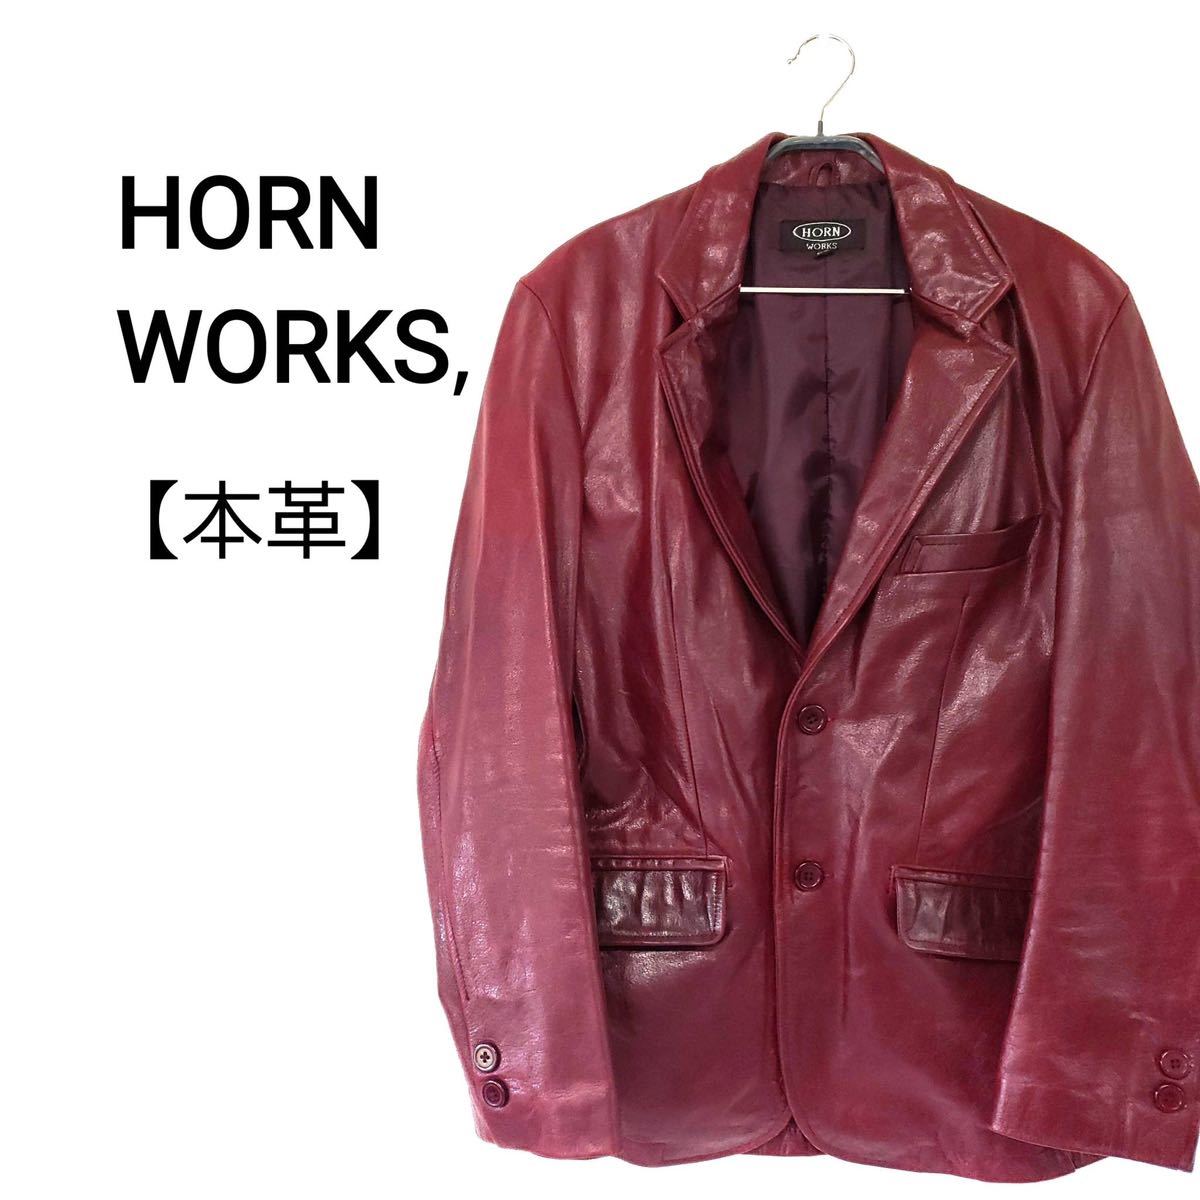 HORN WORKS ワインレッド 内ポケット付 テーラード レザージャケット ホーンワークス LL ワインレッド 本革 革ジャン メンズ レディースの画像1